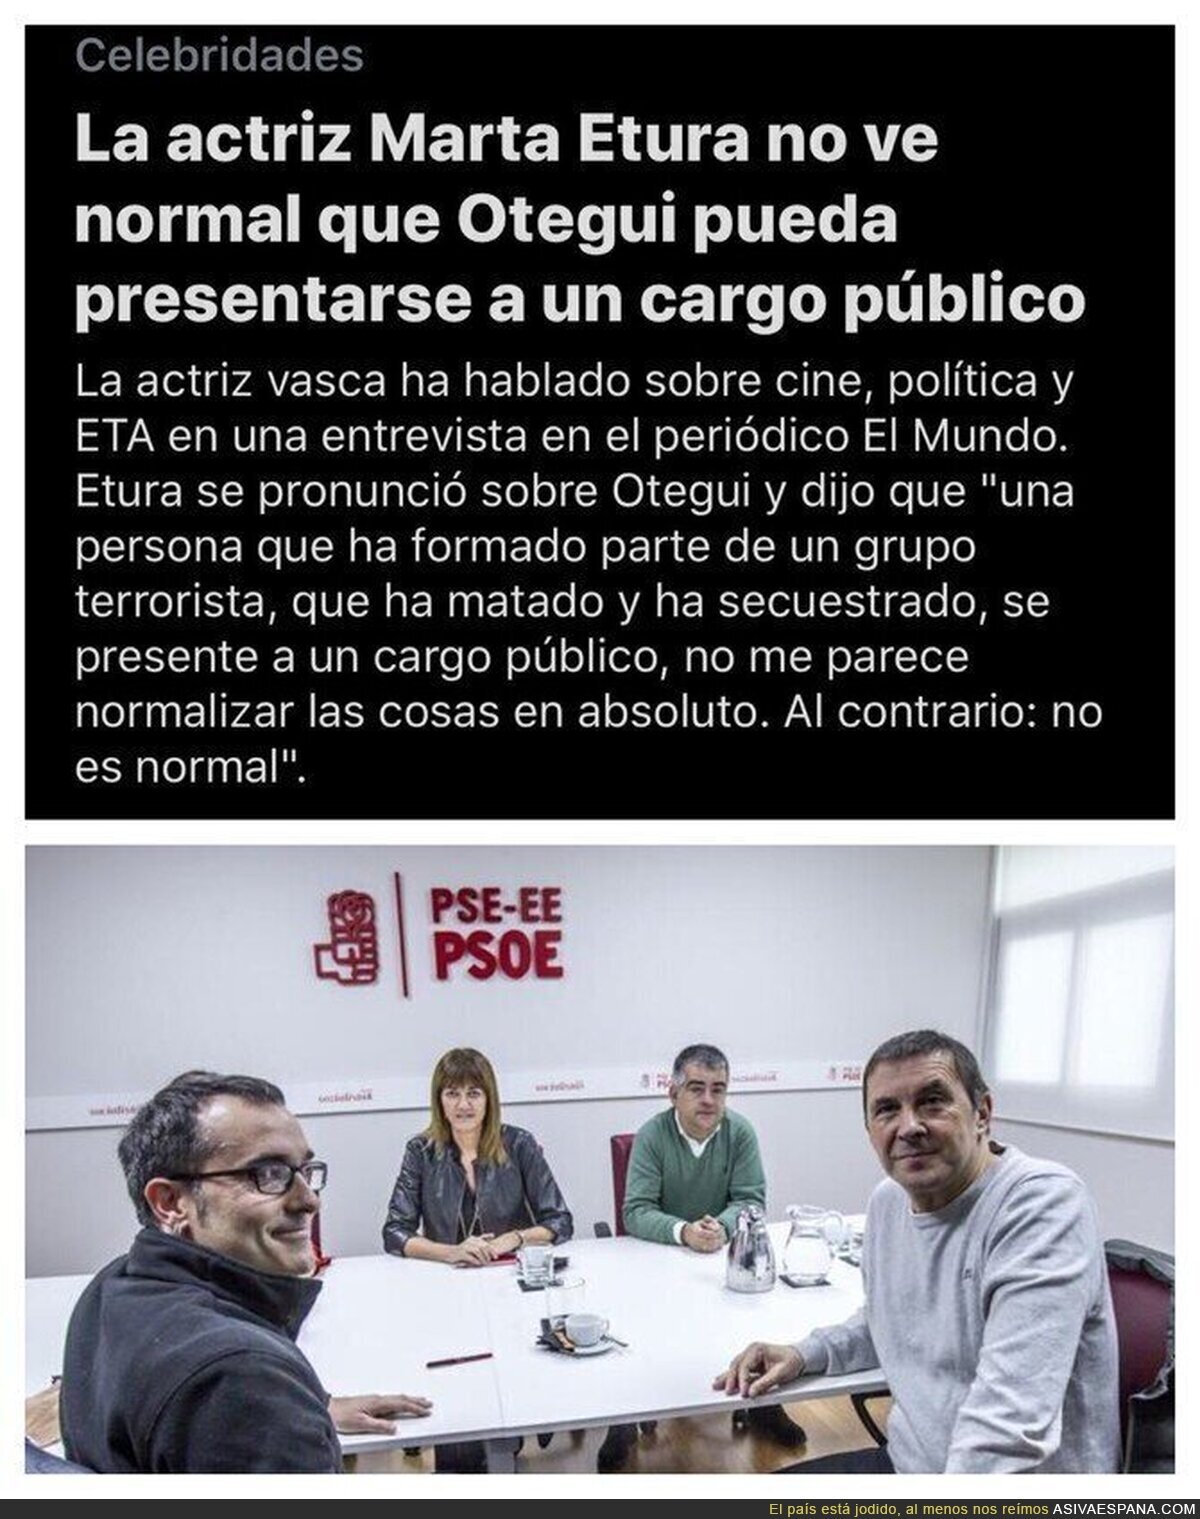 El progresismo de los socios del PSOE